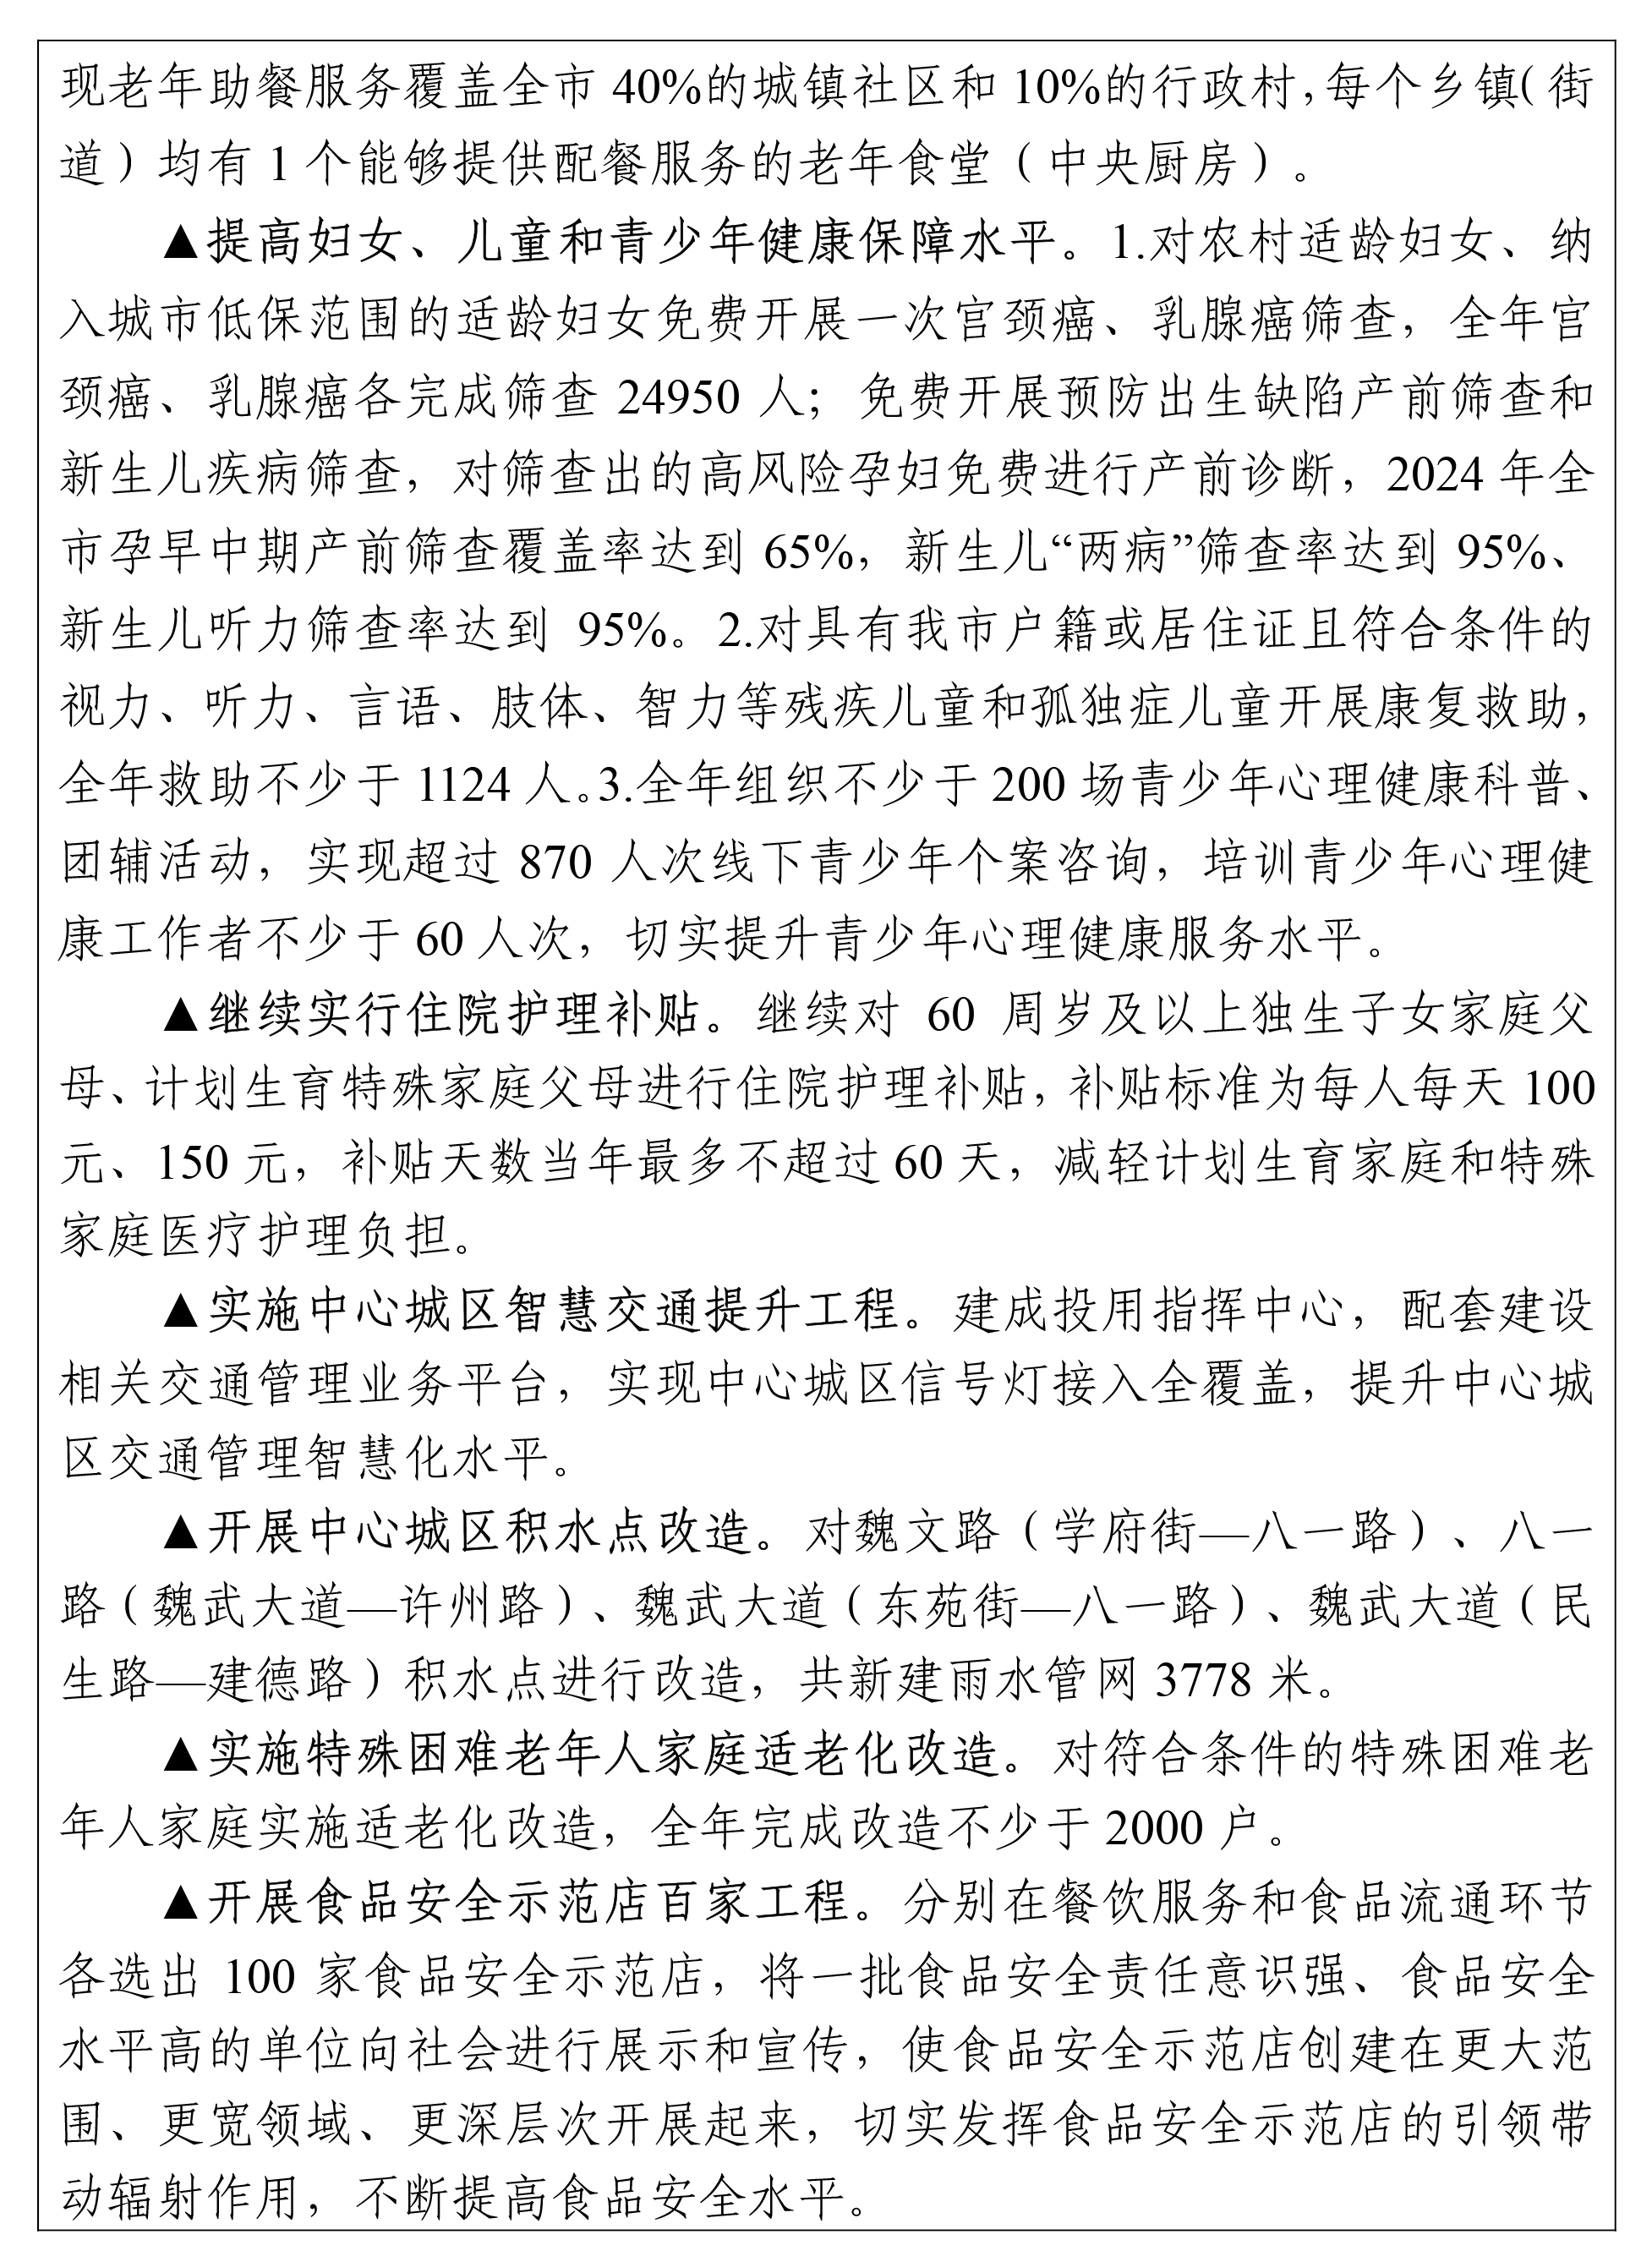 许昌市2024年国民经济和社会发展计划公布(全文)